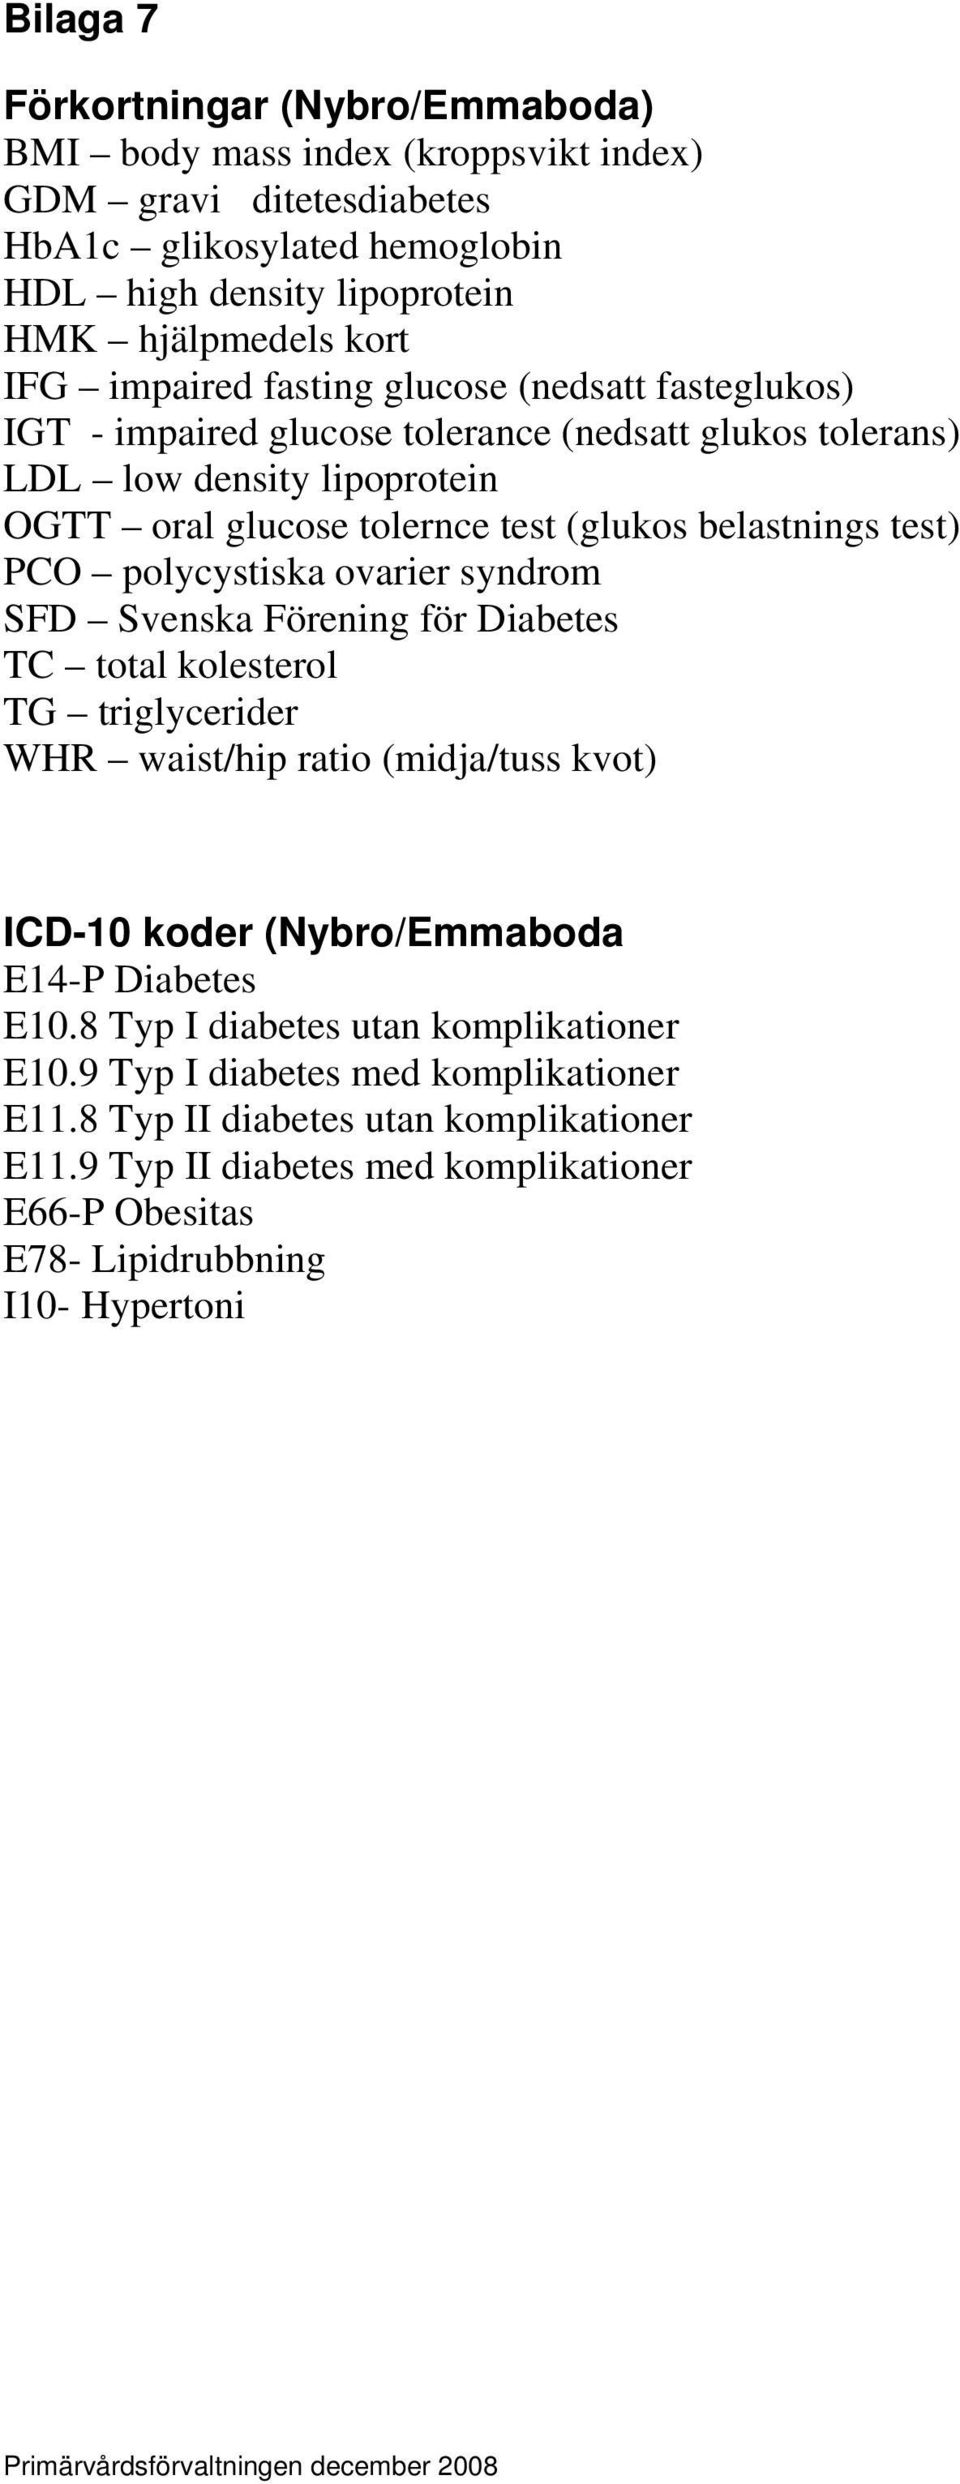 ovarier syndrom SFD Svenska Förening för Diabetes TC total kolesterol TG triglycerider WHR waist/hip ratio (midja/tuss kvot) ICD-10 koder (Nybro/Emmaboda E14-P Diabetes E10.